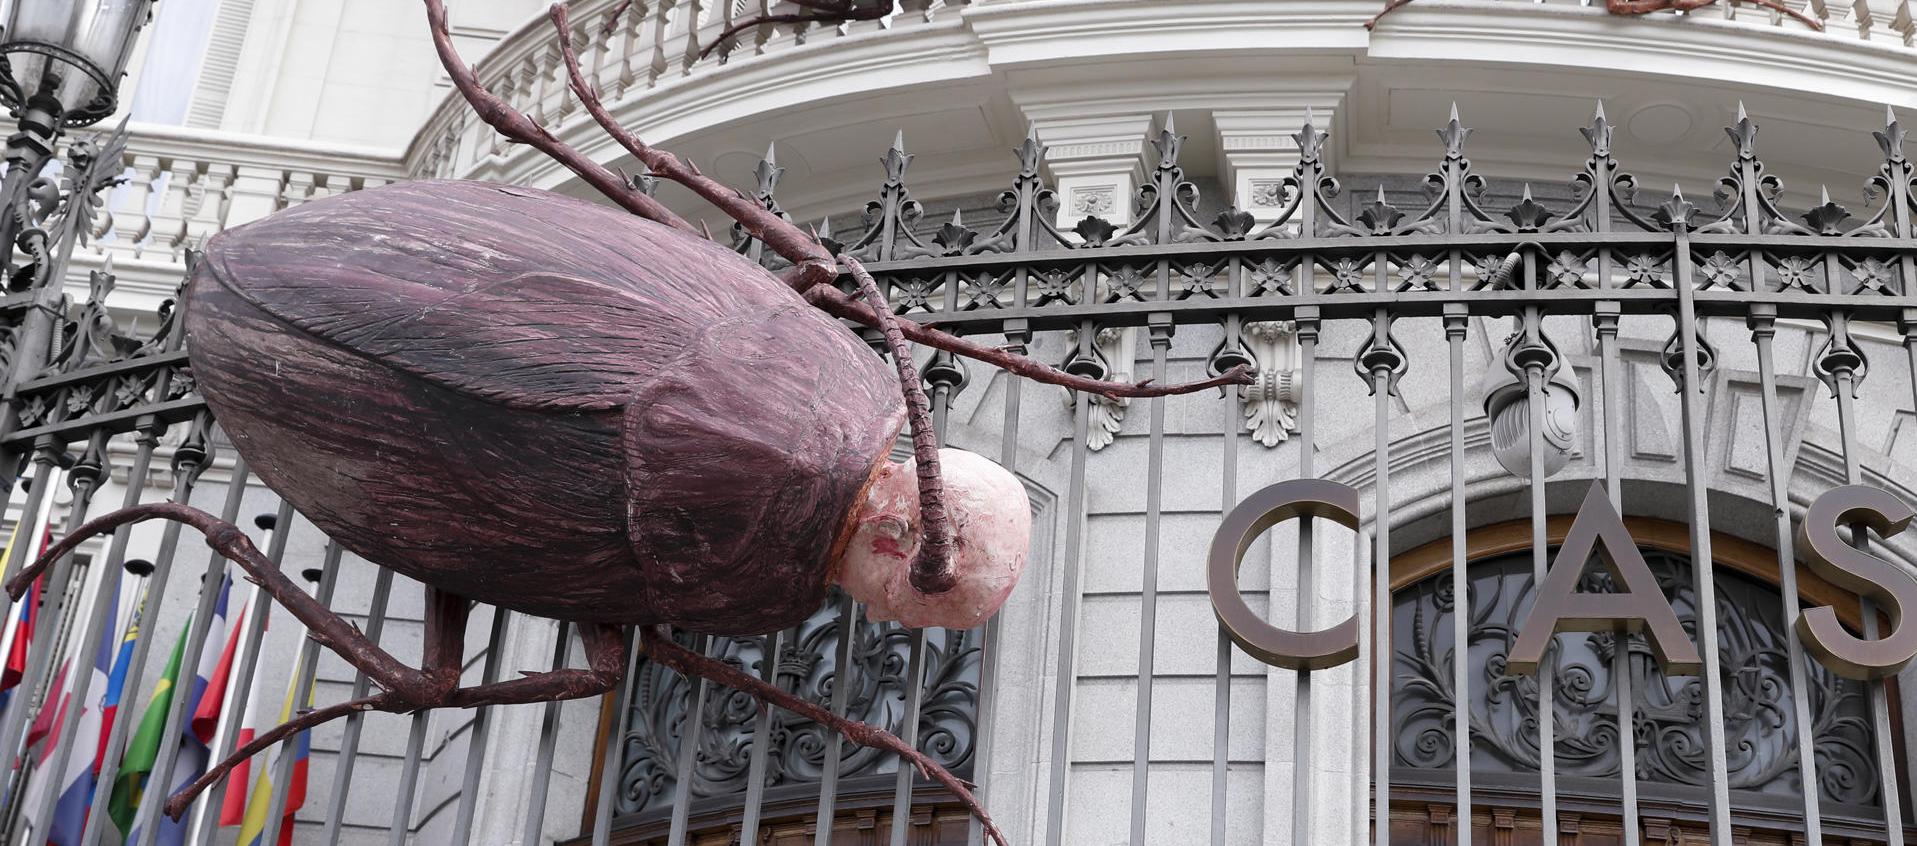 Las cucarachas gigantes con cabeza de ser humano son el proyecto artístico "Sobrevivientes" del cubano Roberto Fabelo.